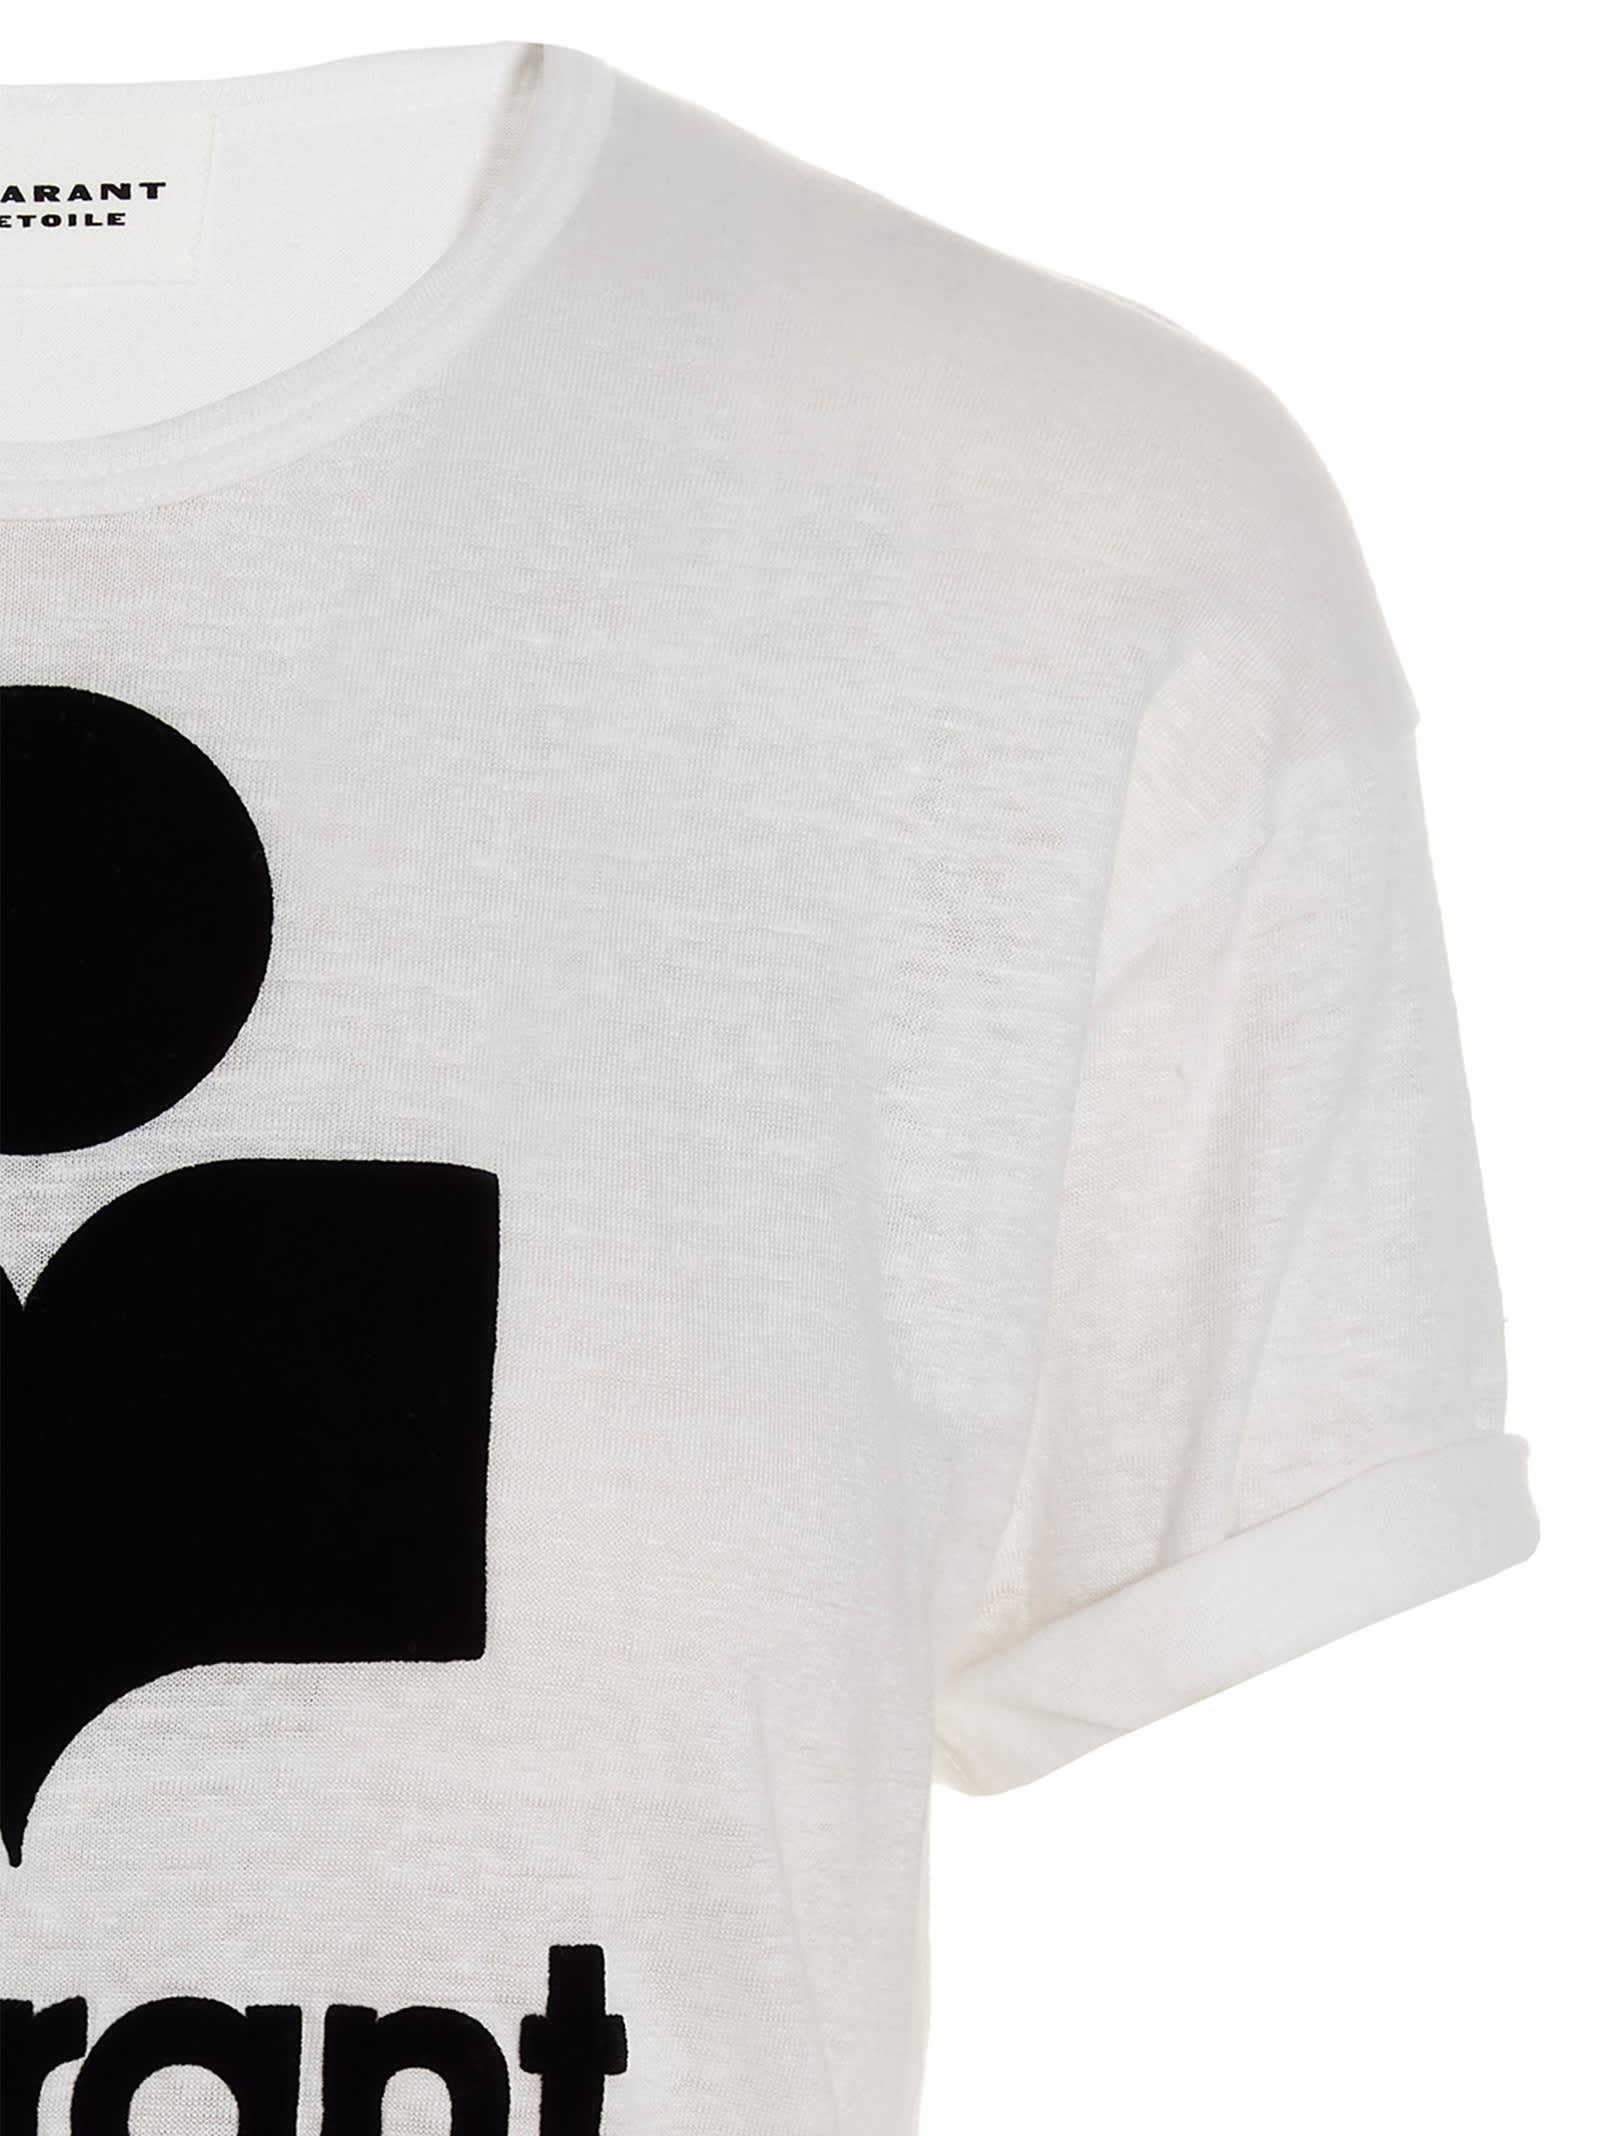 Shop Marant Etoile Koldi T-shirt In White/black